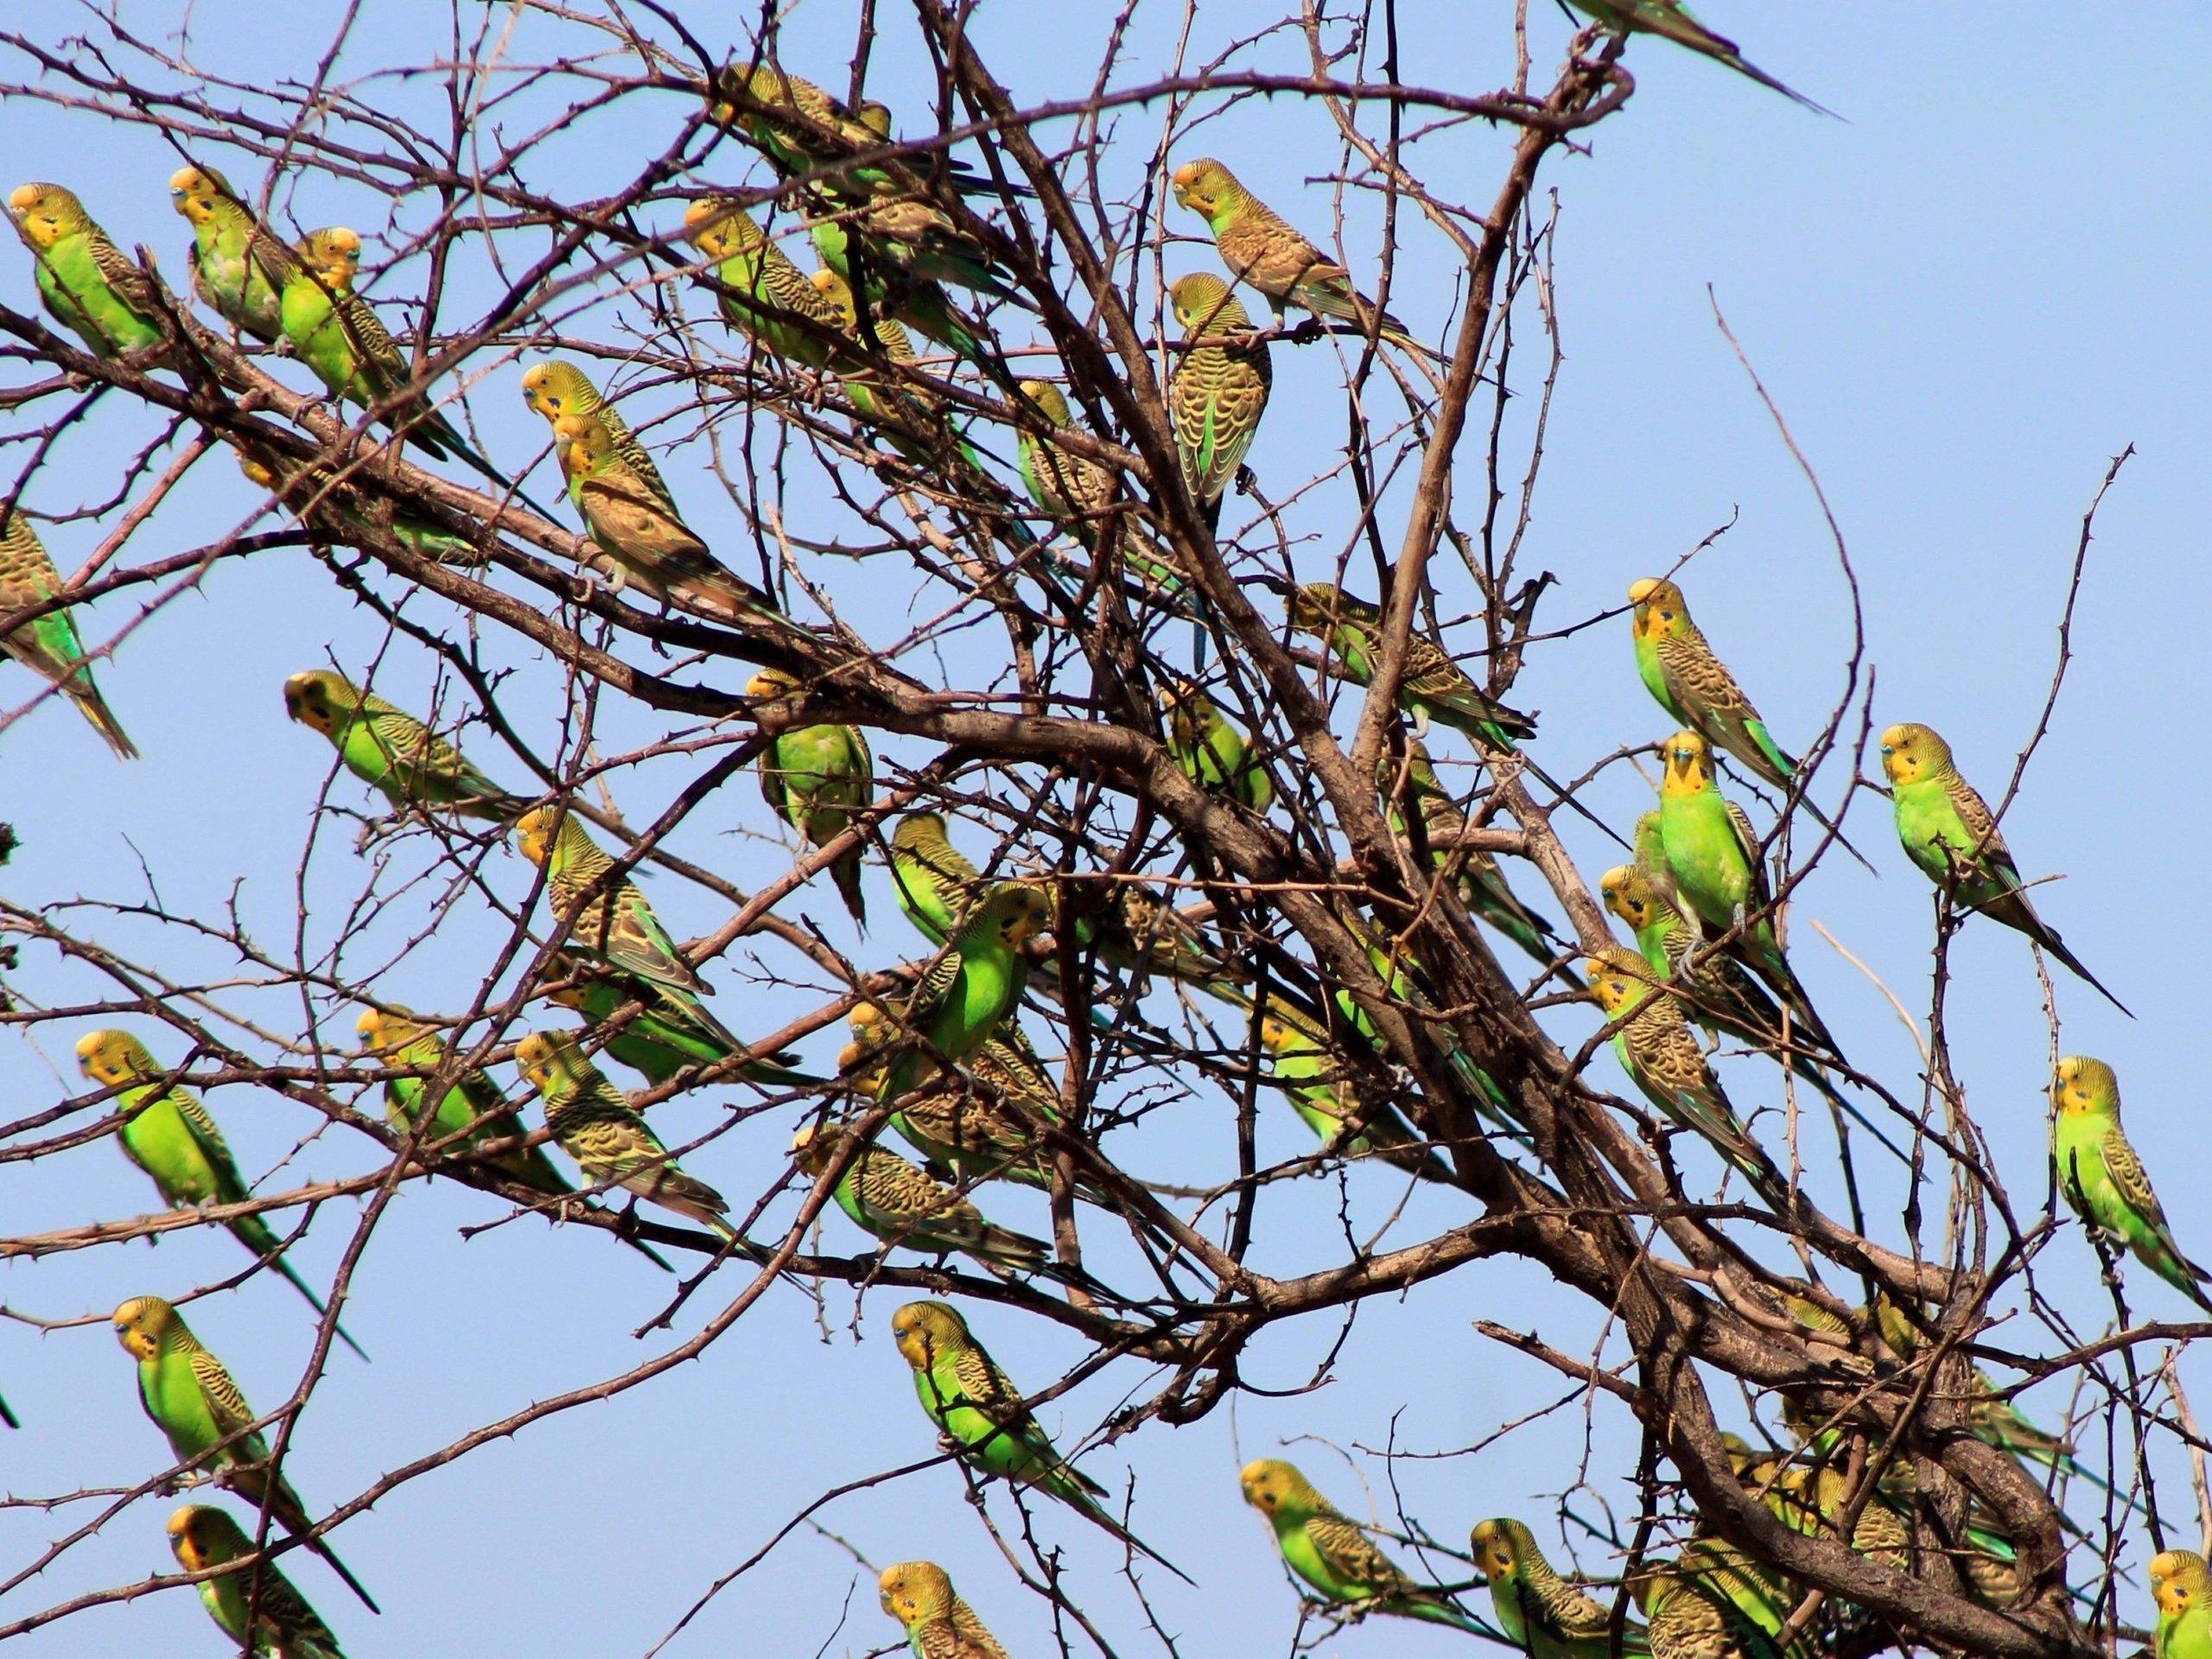 Дикие волнистые попугаи: о жизни, повадках и местах обитания